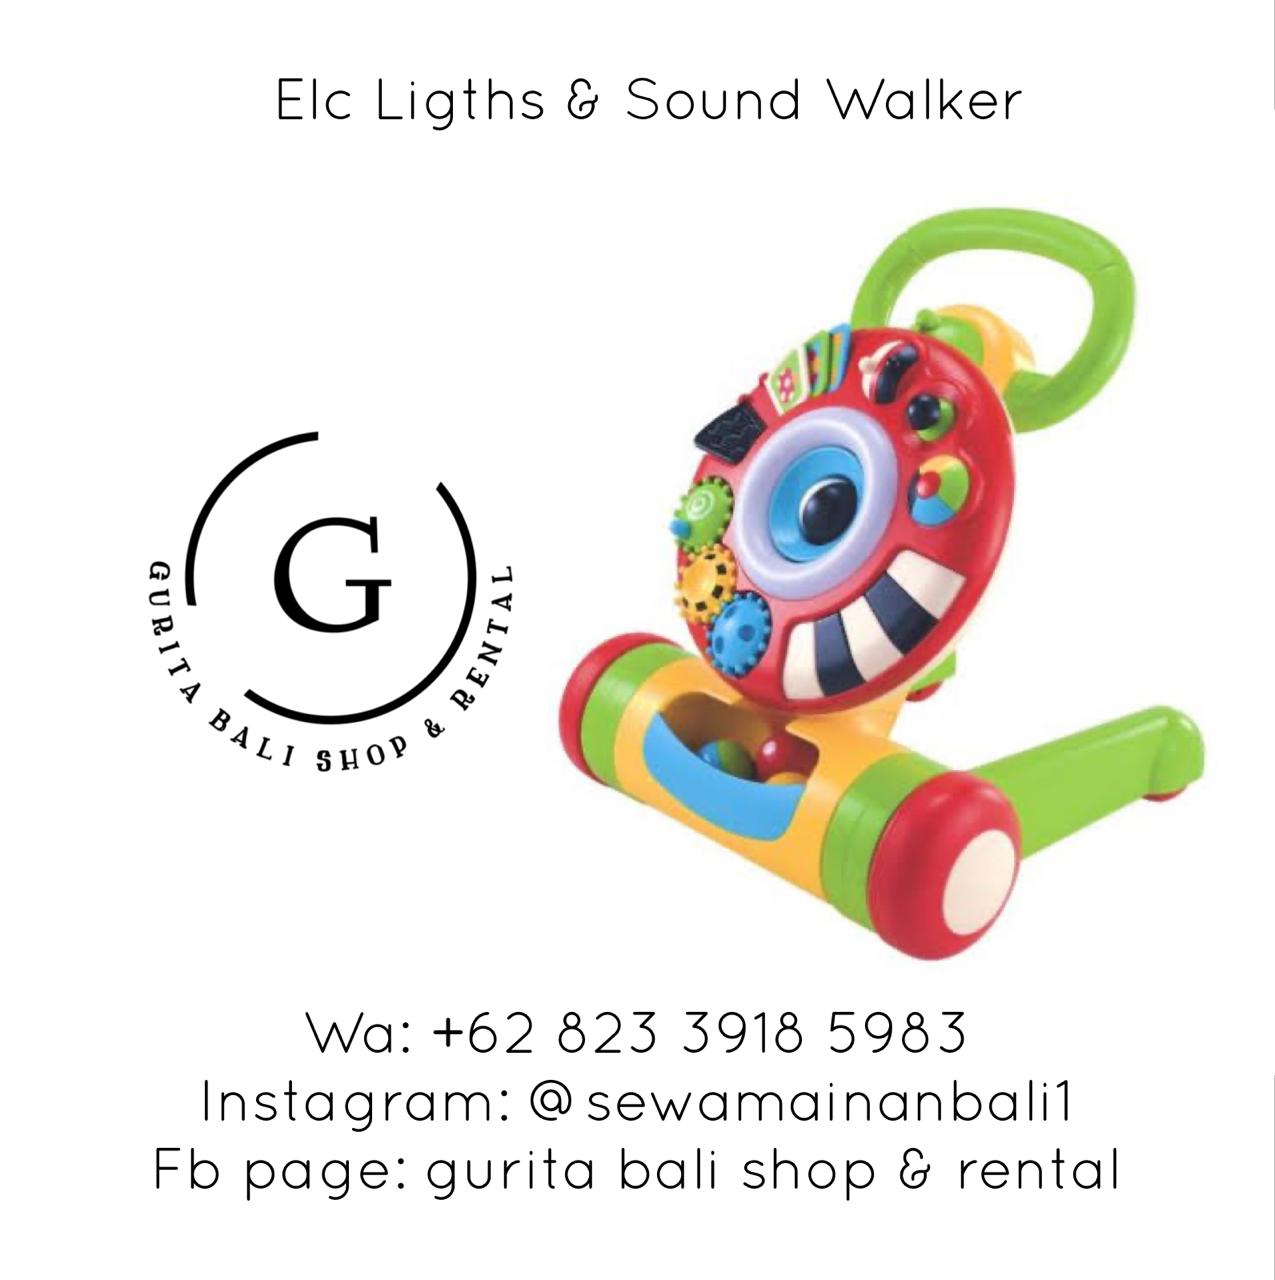 ELC LIGHTS & SOUND WALKER